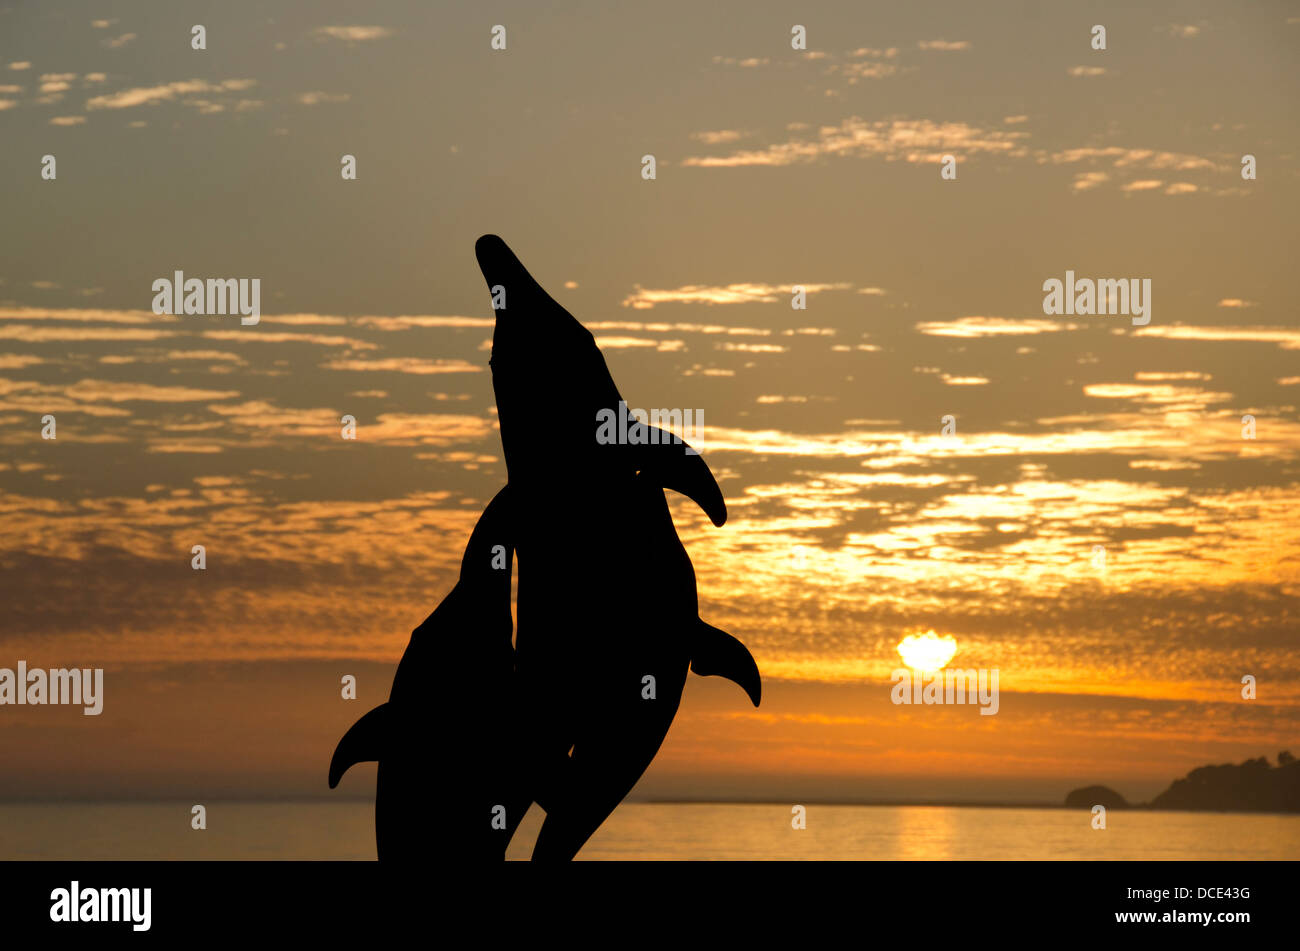 Kalifornien, Pacific Coast, Pismo Beach. Delphin-Skulptur-Silhouette mit Pazifischen Ozean Sonnenuntergang. Stockfoto